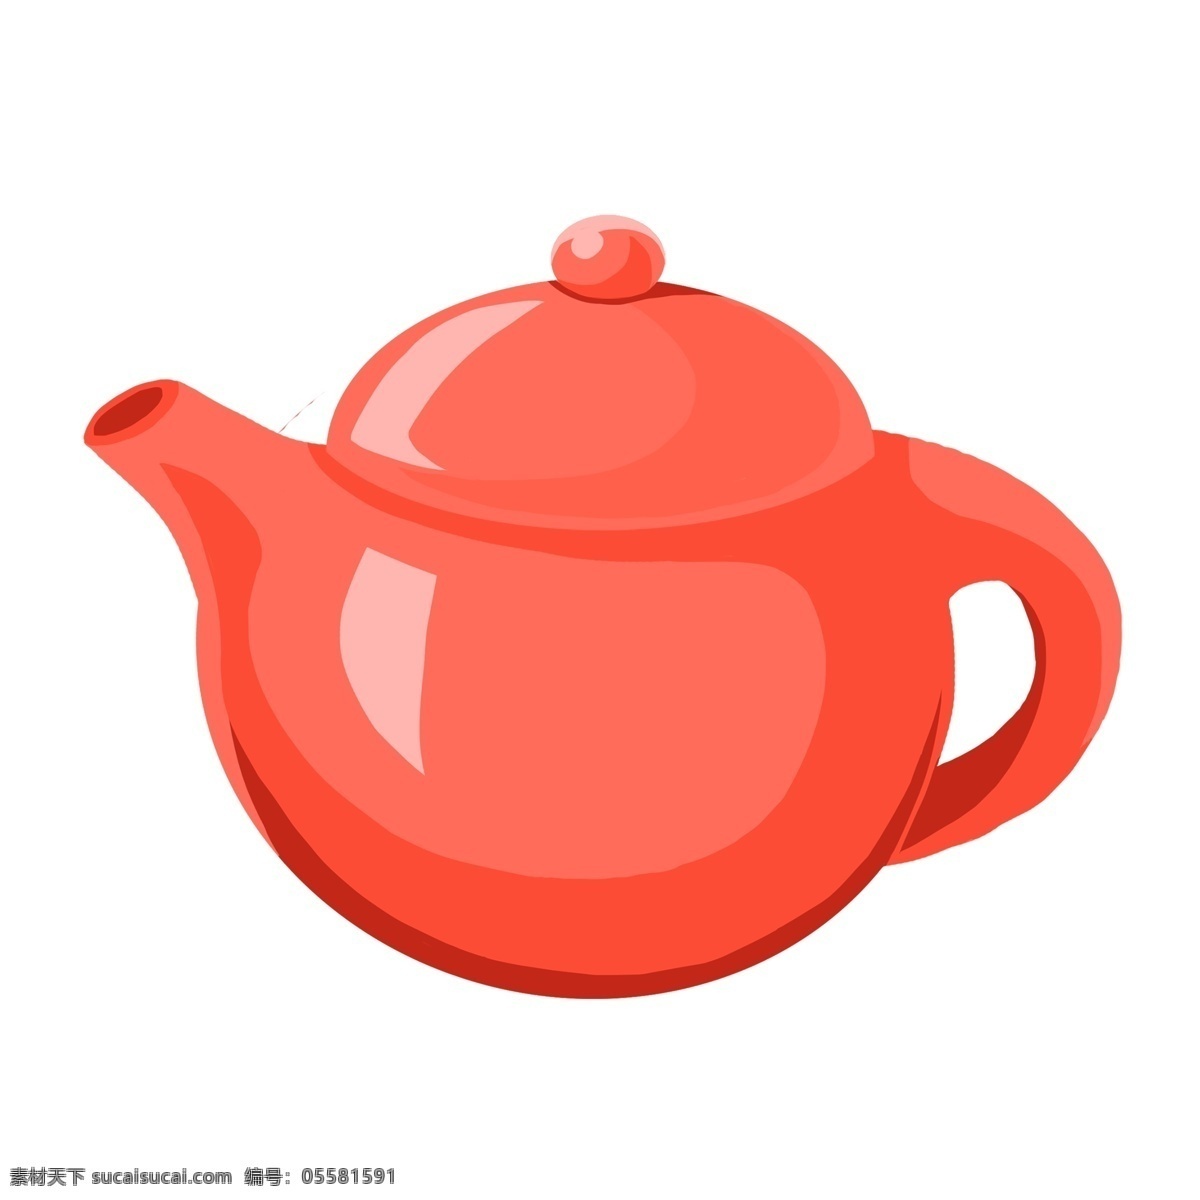 清明节 手绘 古风 茶具 元素 茶壶 茶杯